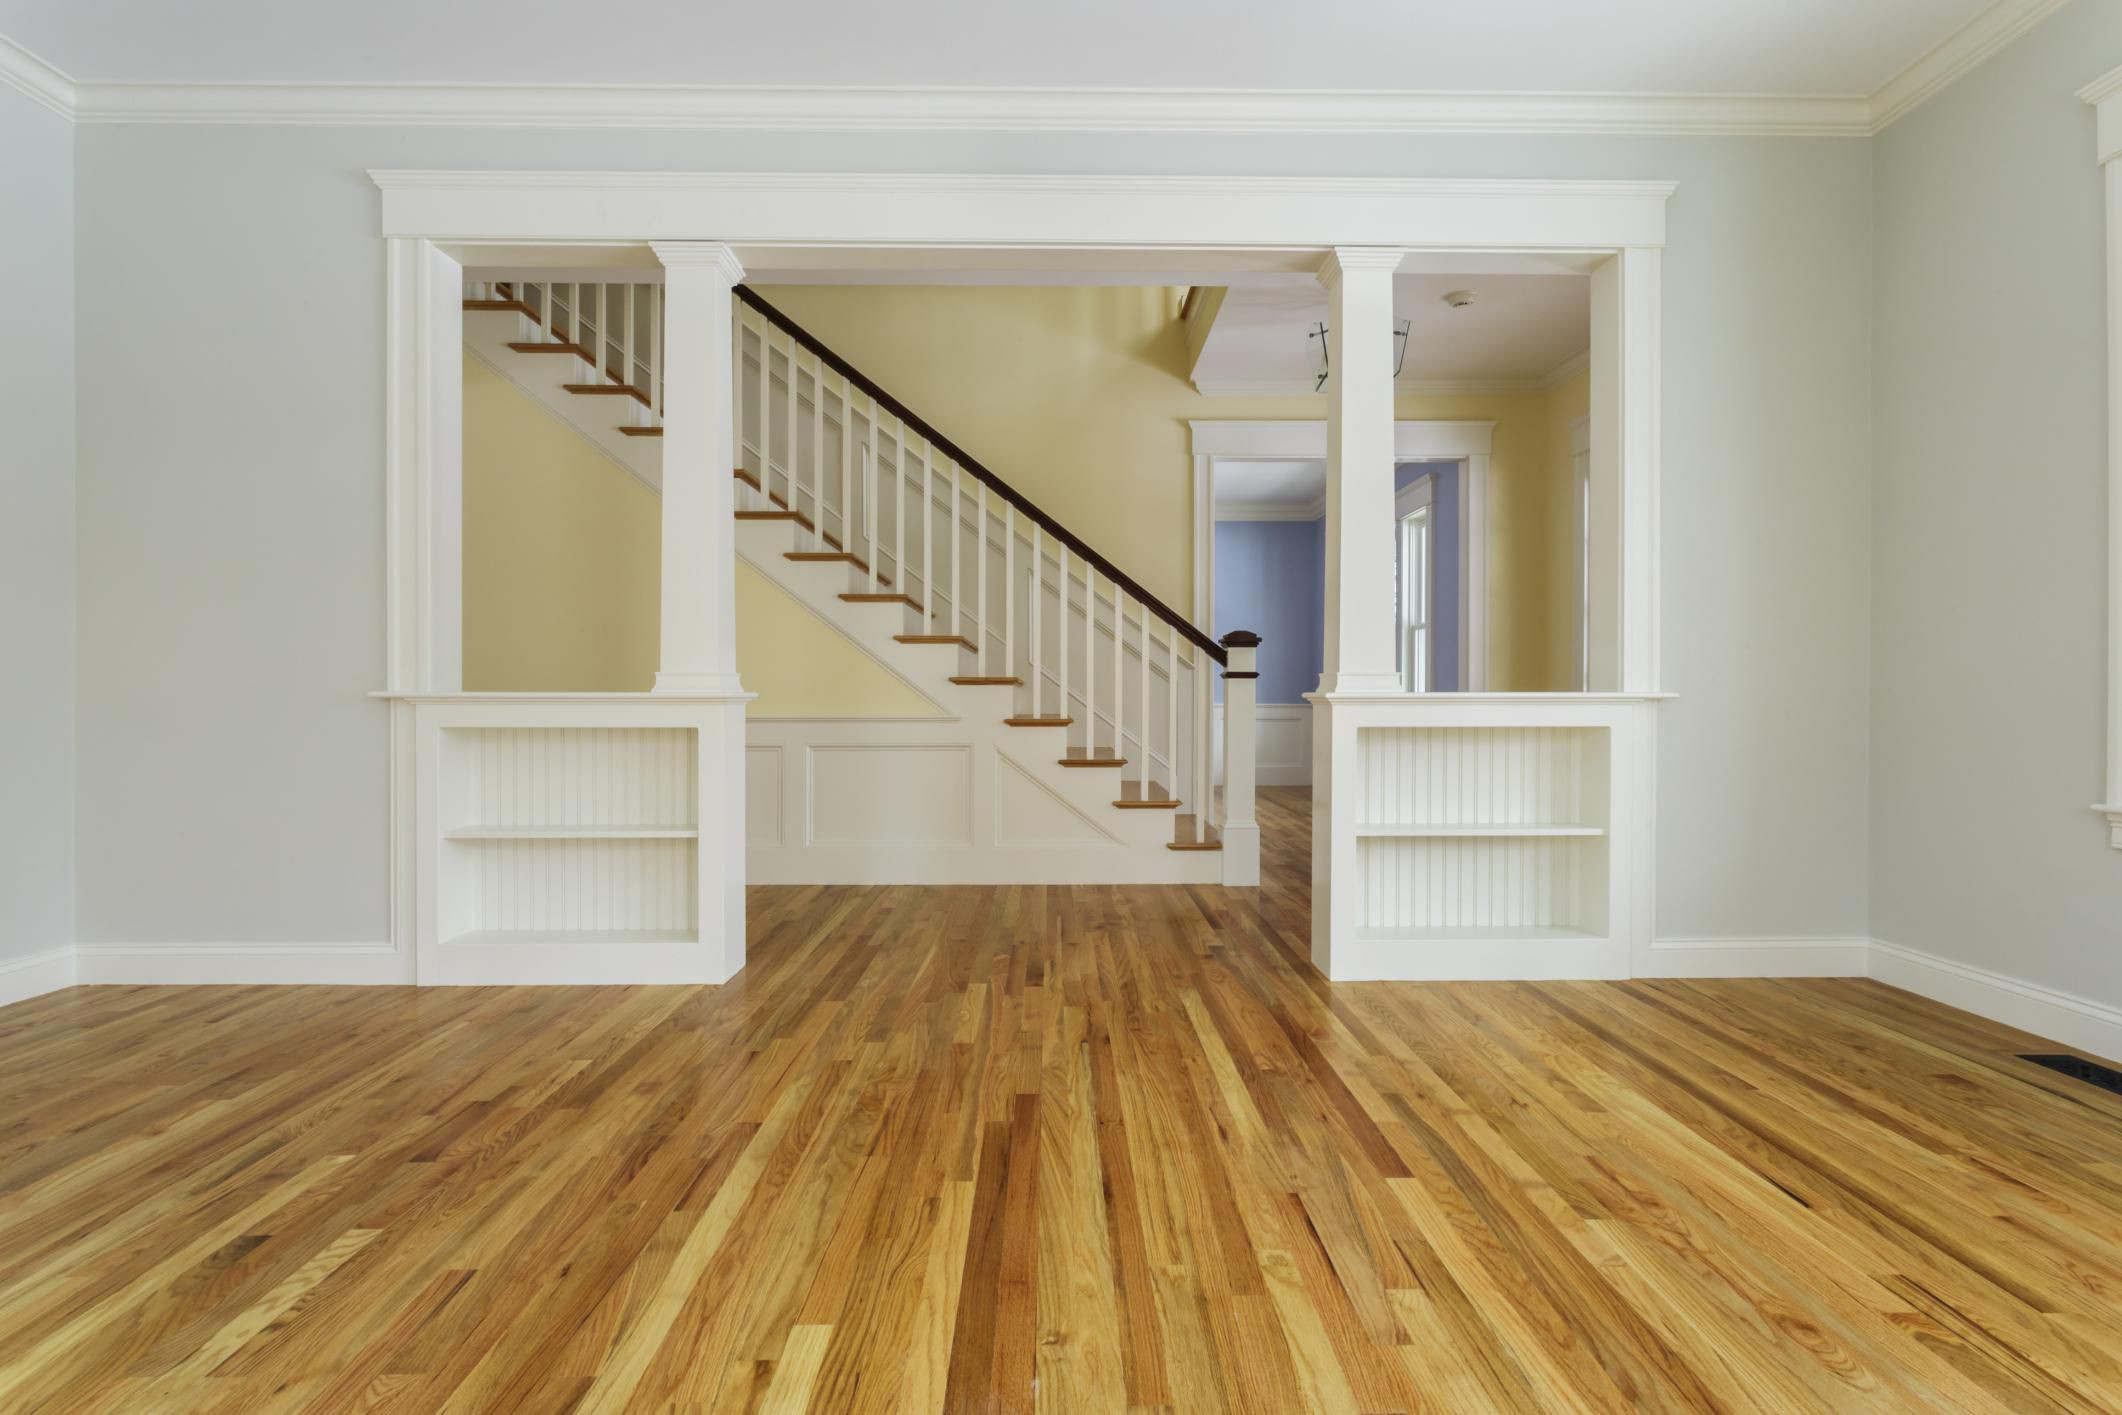 12 Best Repair Kit for Hardwood Floor 2022 free download repair kit for hardwood floor of guide to solid hardwood floors for 168686571 56a49f213df78cf772834e24